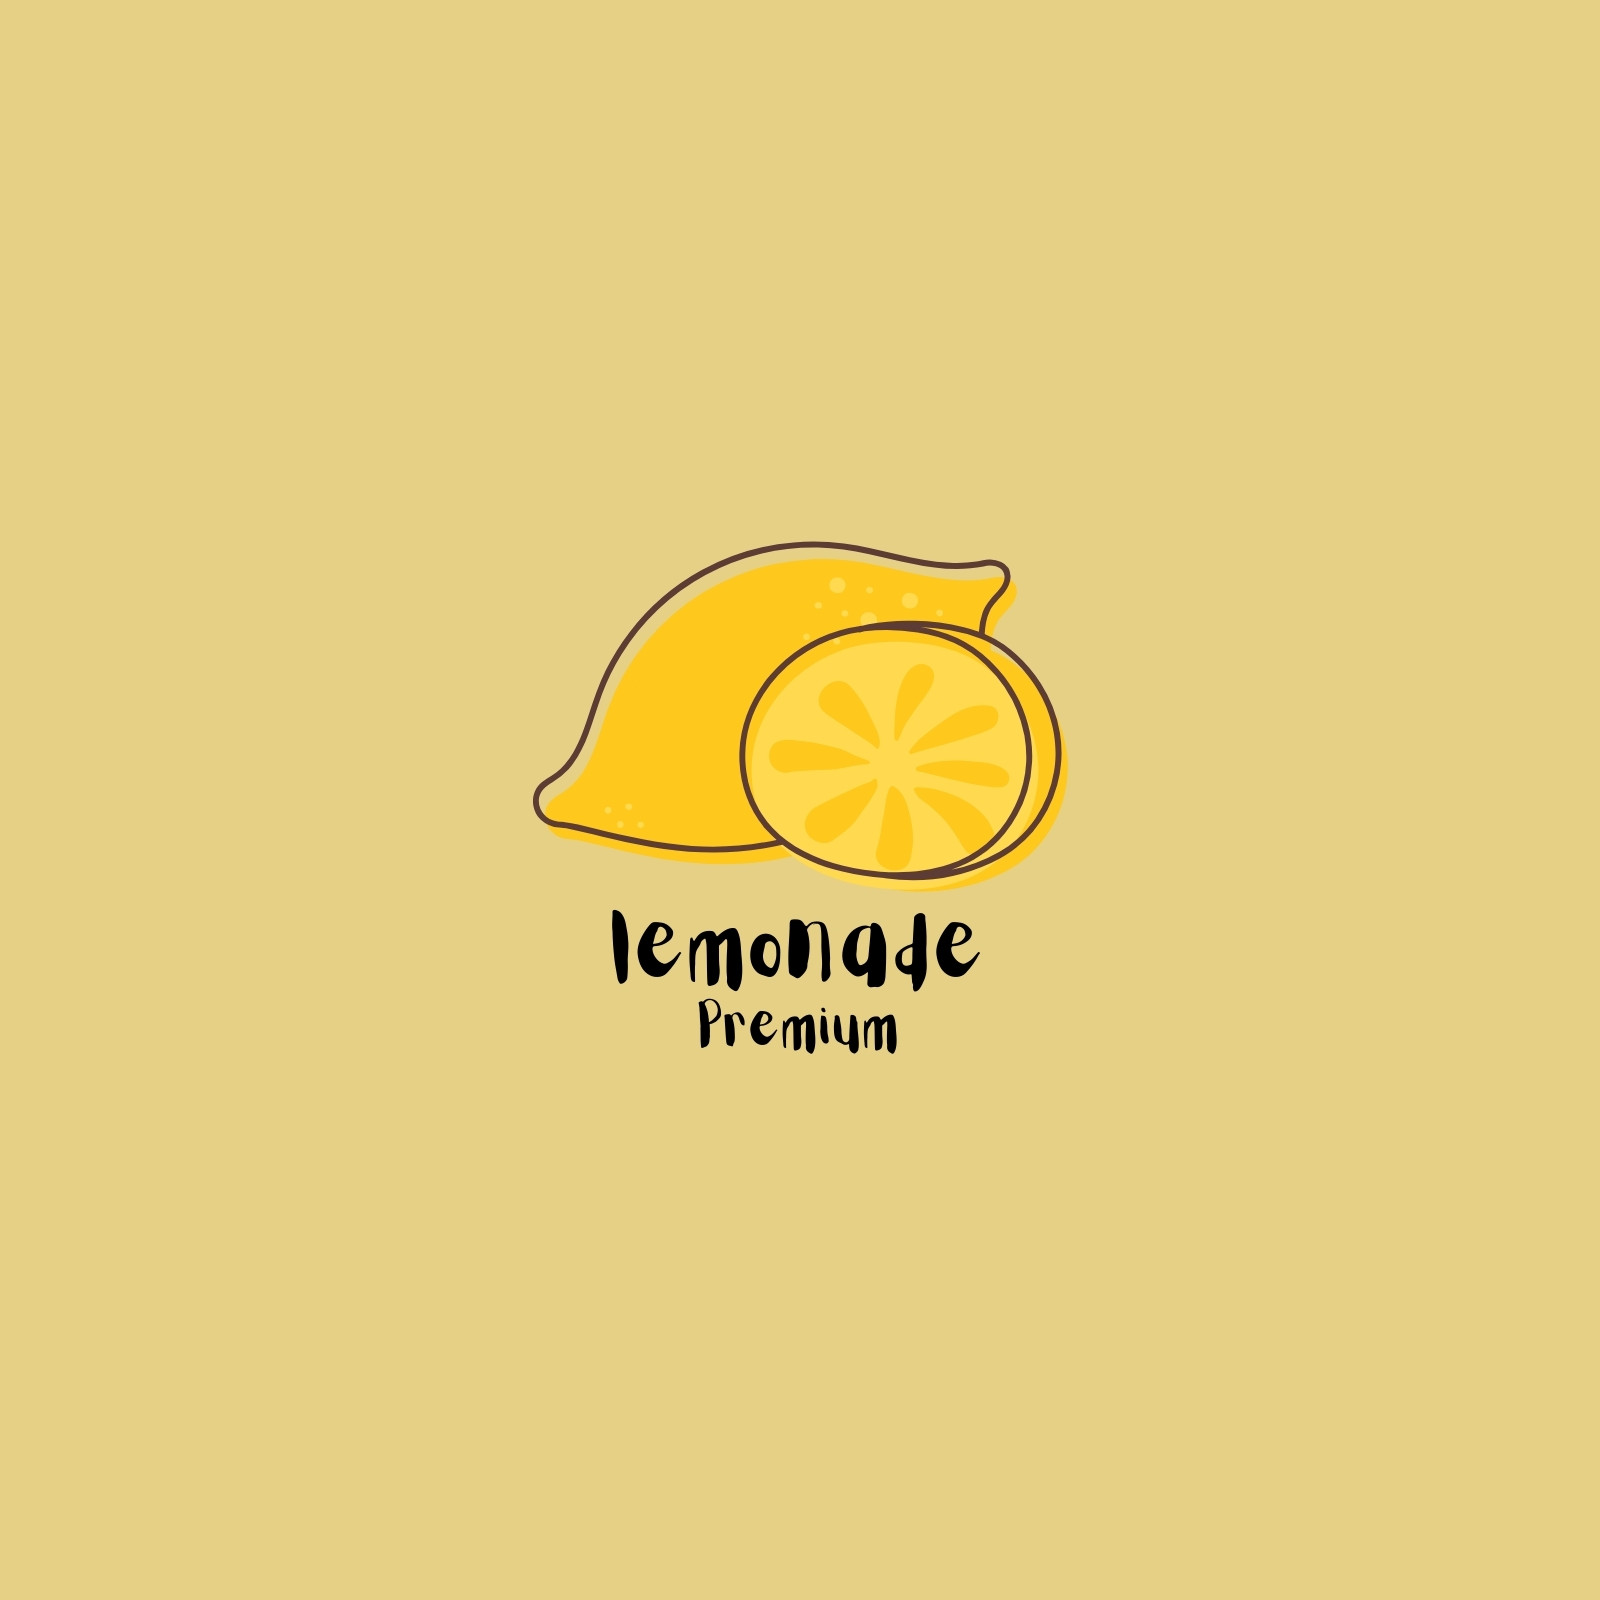 Download Lemon Logo Drink Idea - Lemon PNG Image with No Background -  PNGkey.com